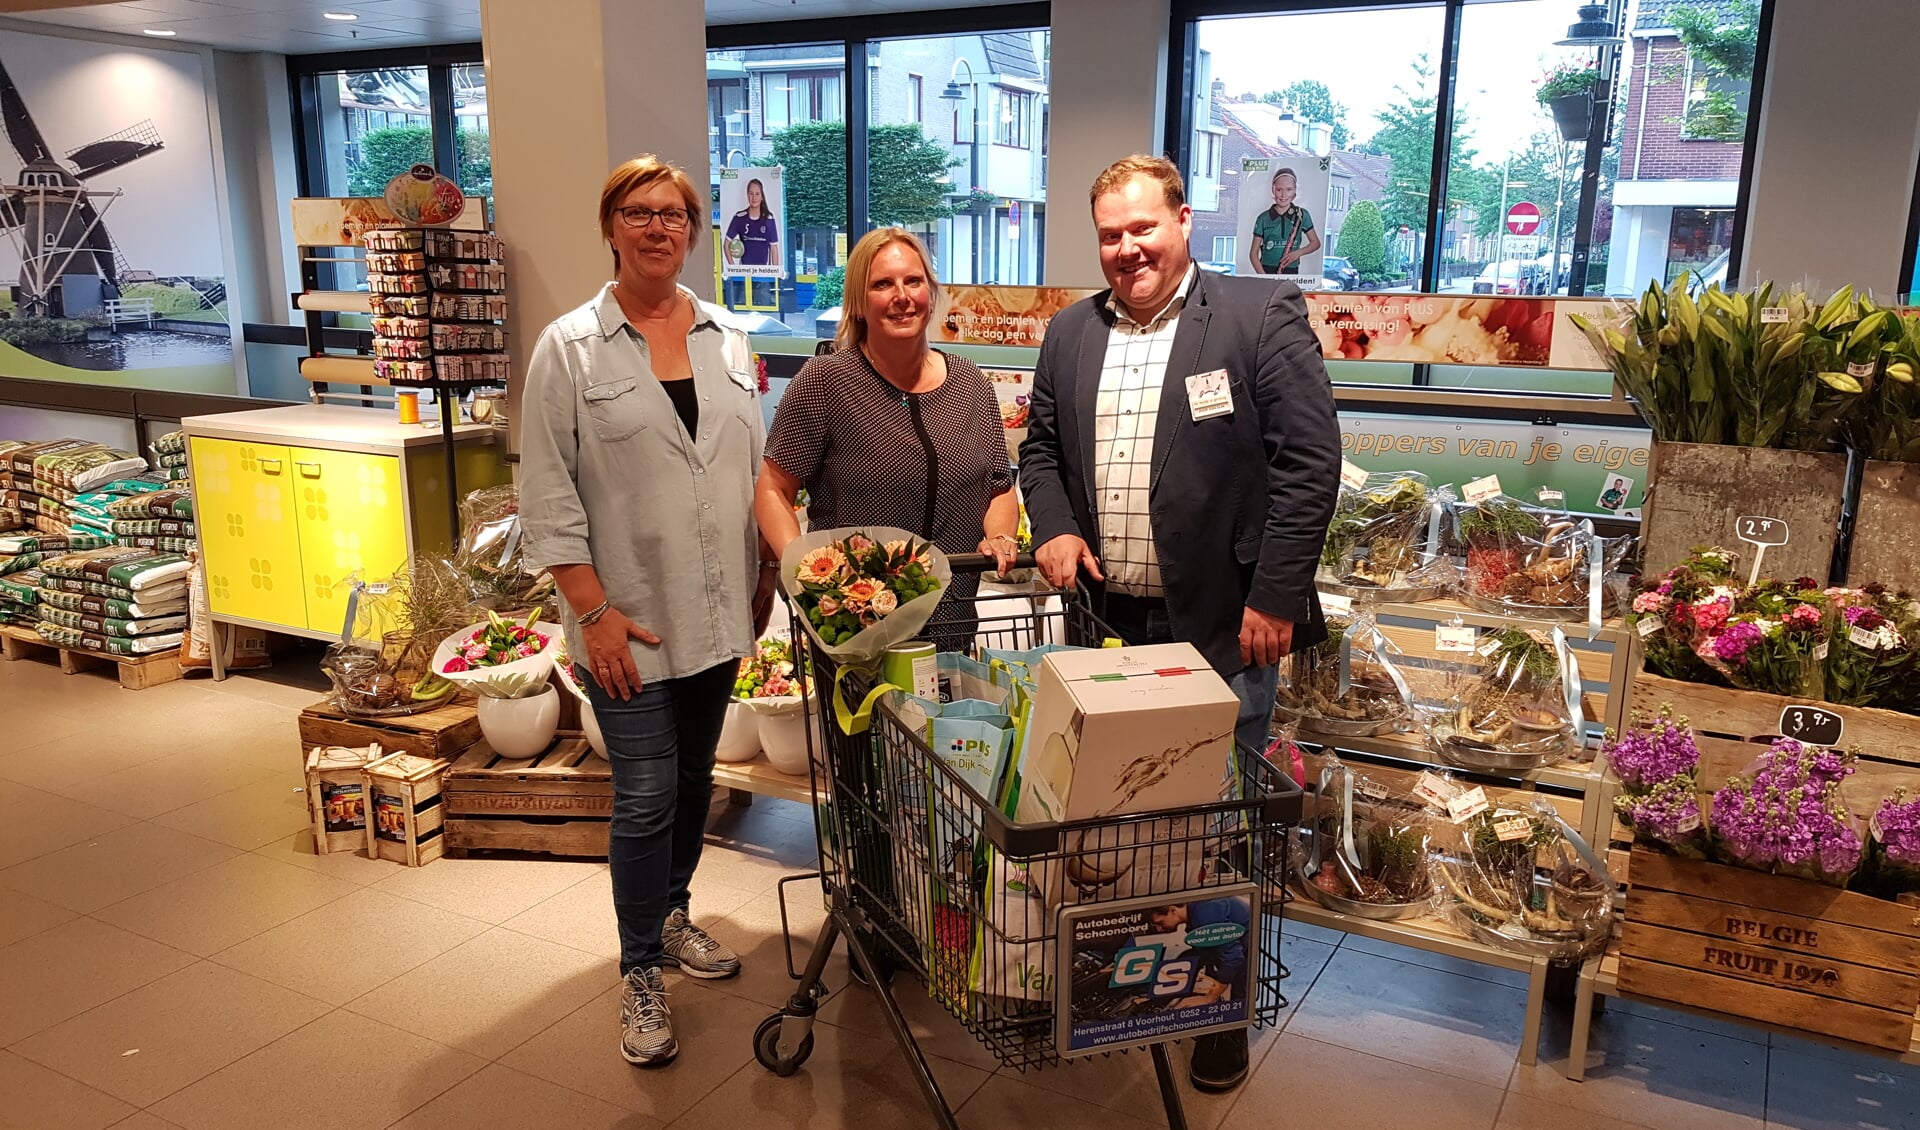 Sandy Kortekaas en vriendin Yvonne verlaten met een volle boodschappenkar de supermarkt. Eigenaar Joop van Dijk had na afloop ook nog een bloemetje voor de shoppers. | Foto: pr.